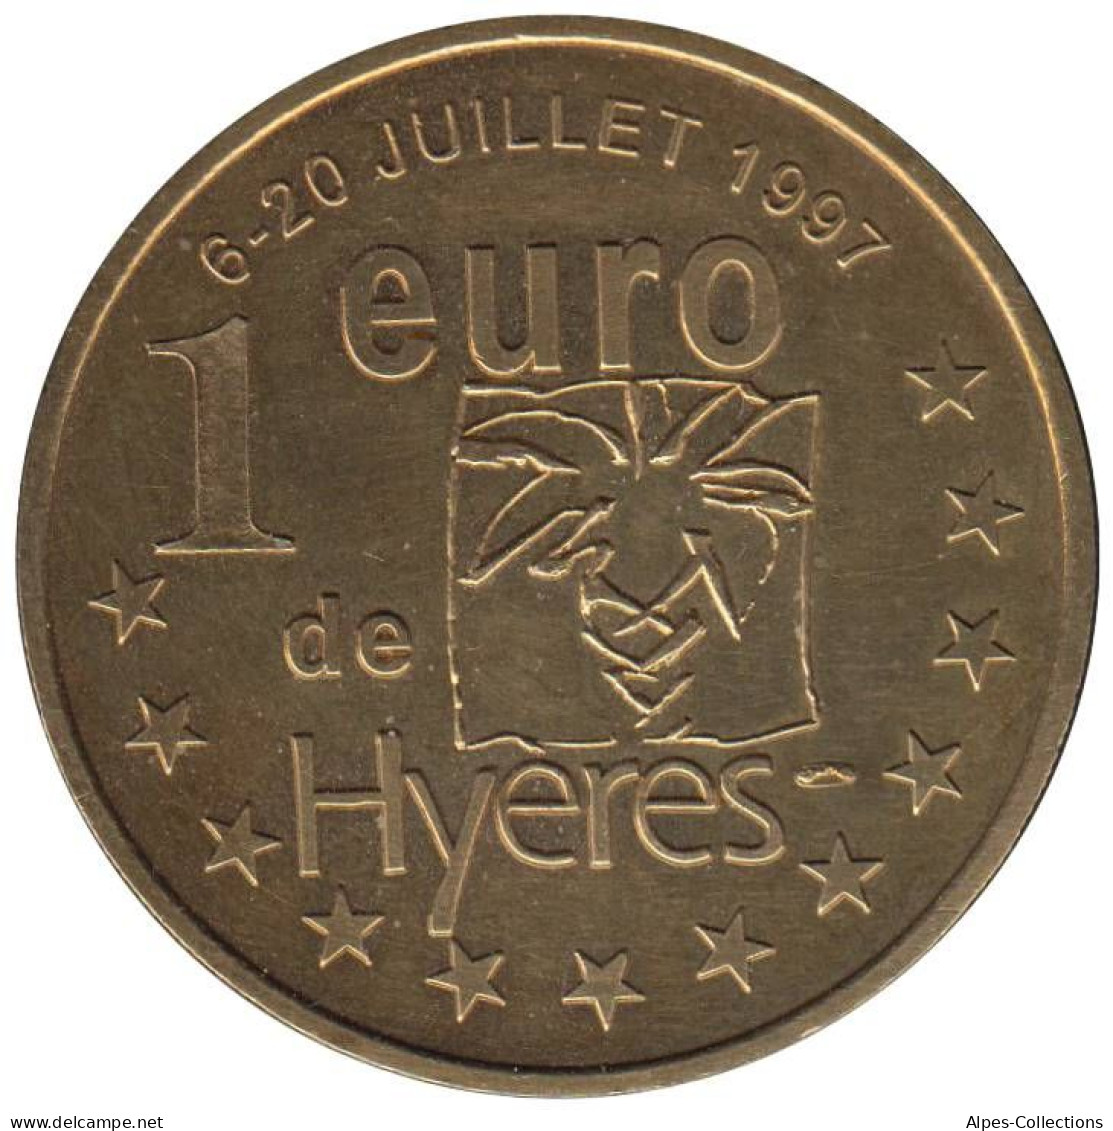 HYERES - EU0010.1 - 1 EURO DES VILLES - Réf: T295 - 1997 - Euro Der Städte